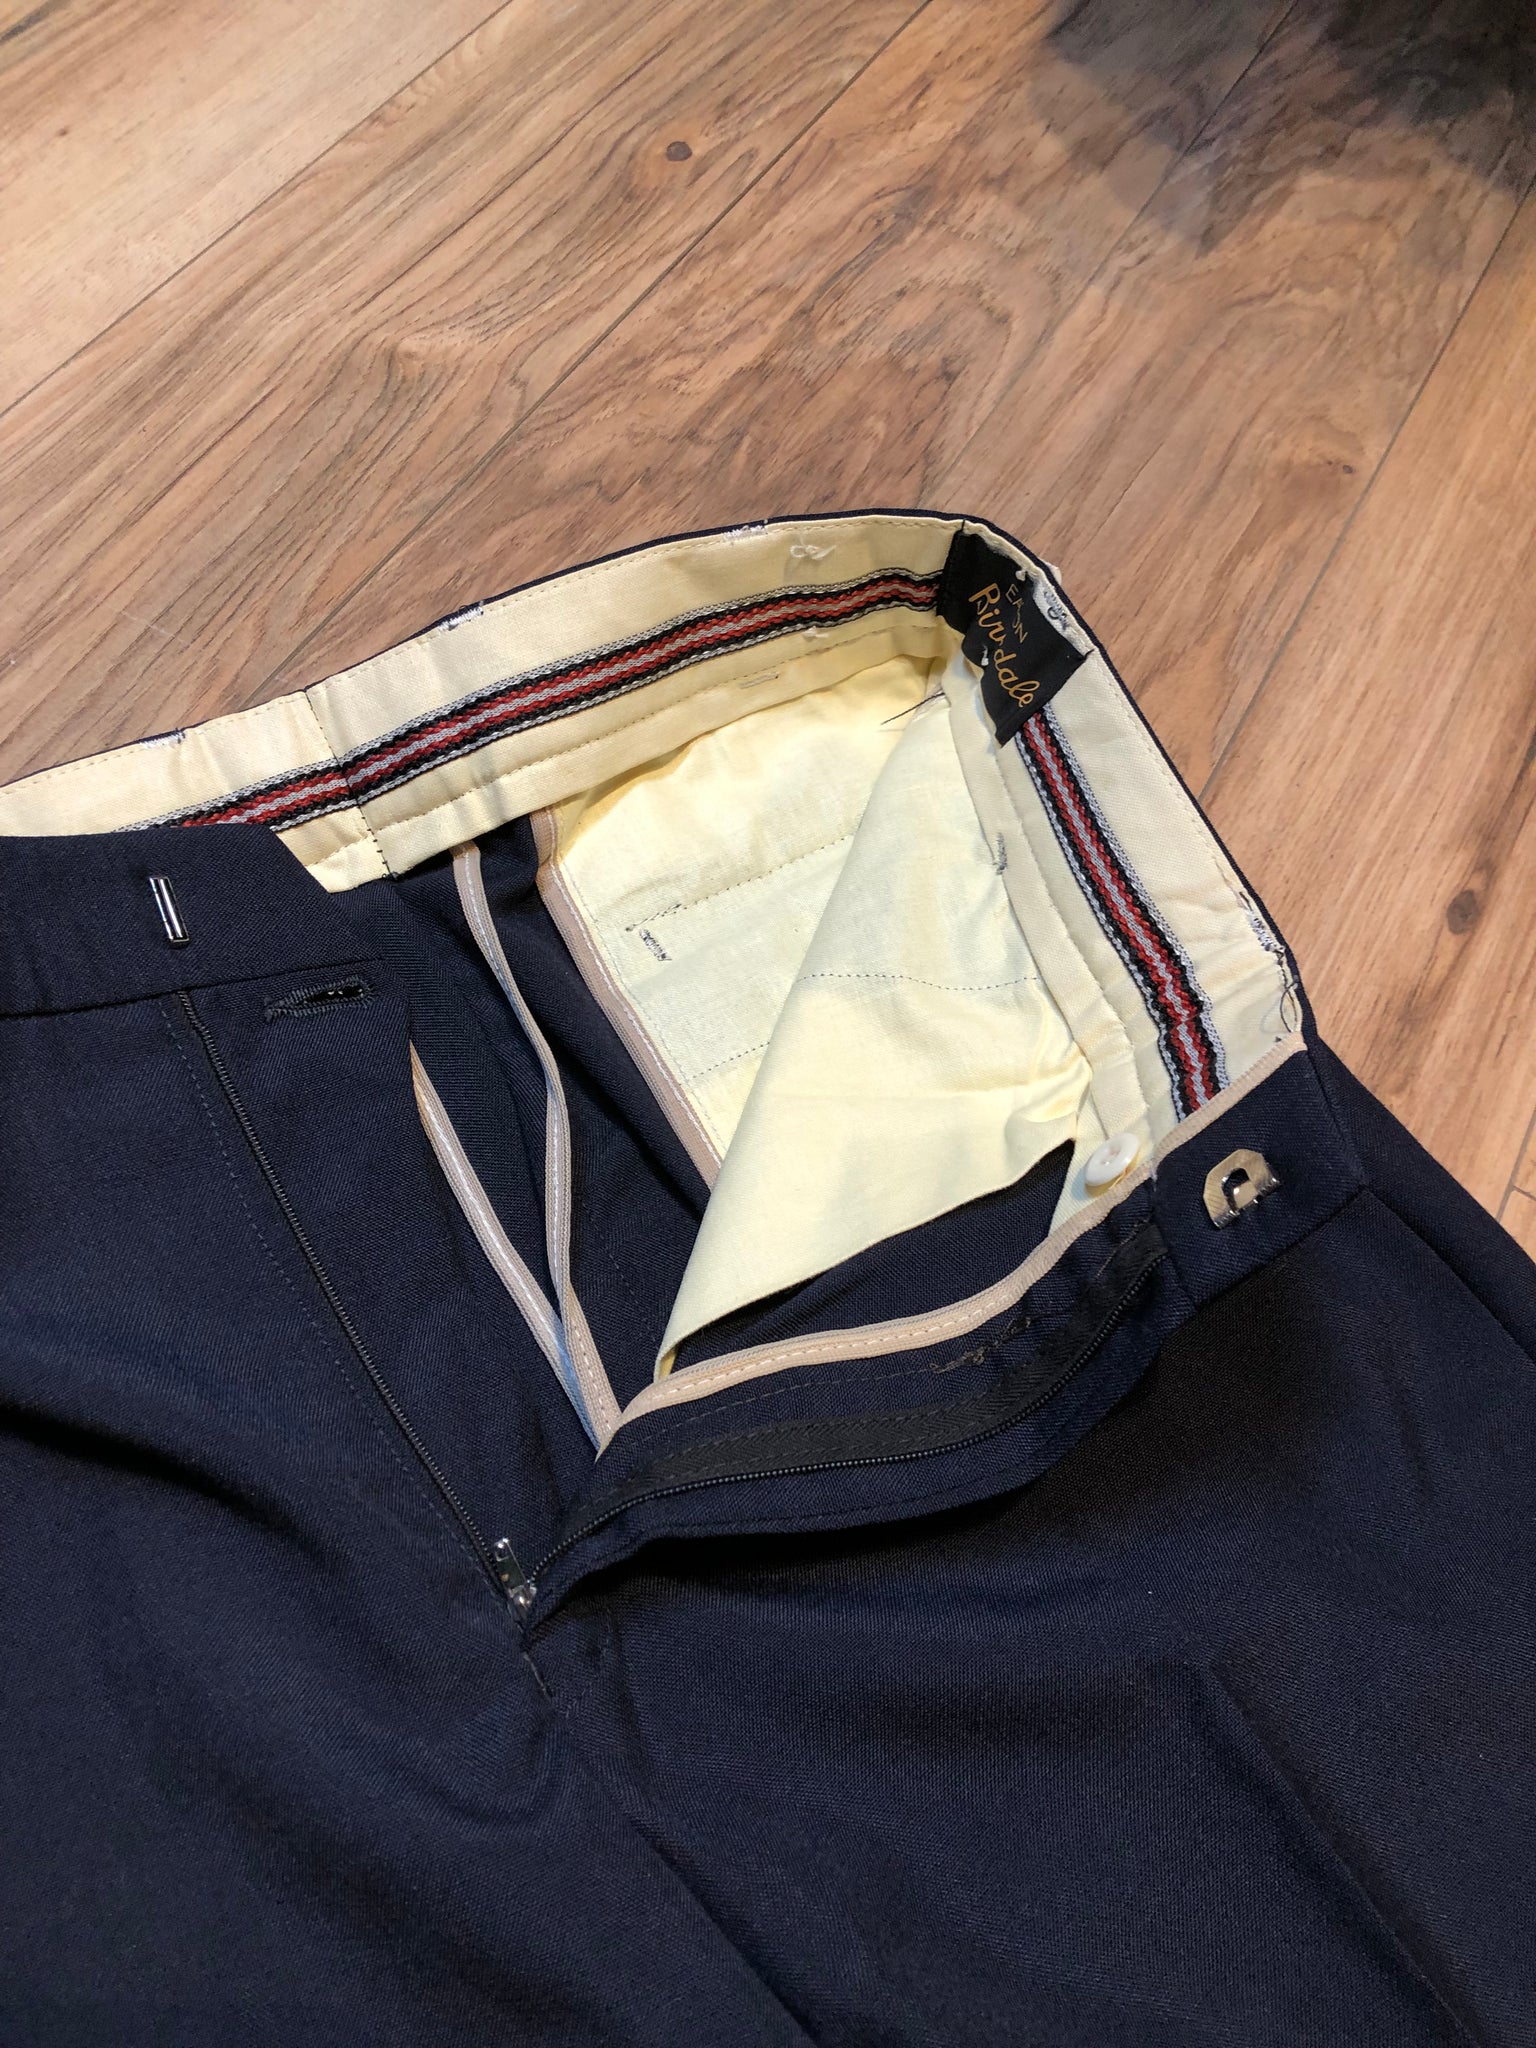 Vintage Deadstock Eaton's Birkdale Pants, Made in Czechoslovakia